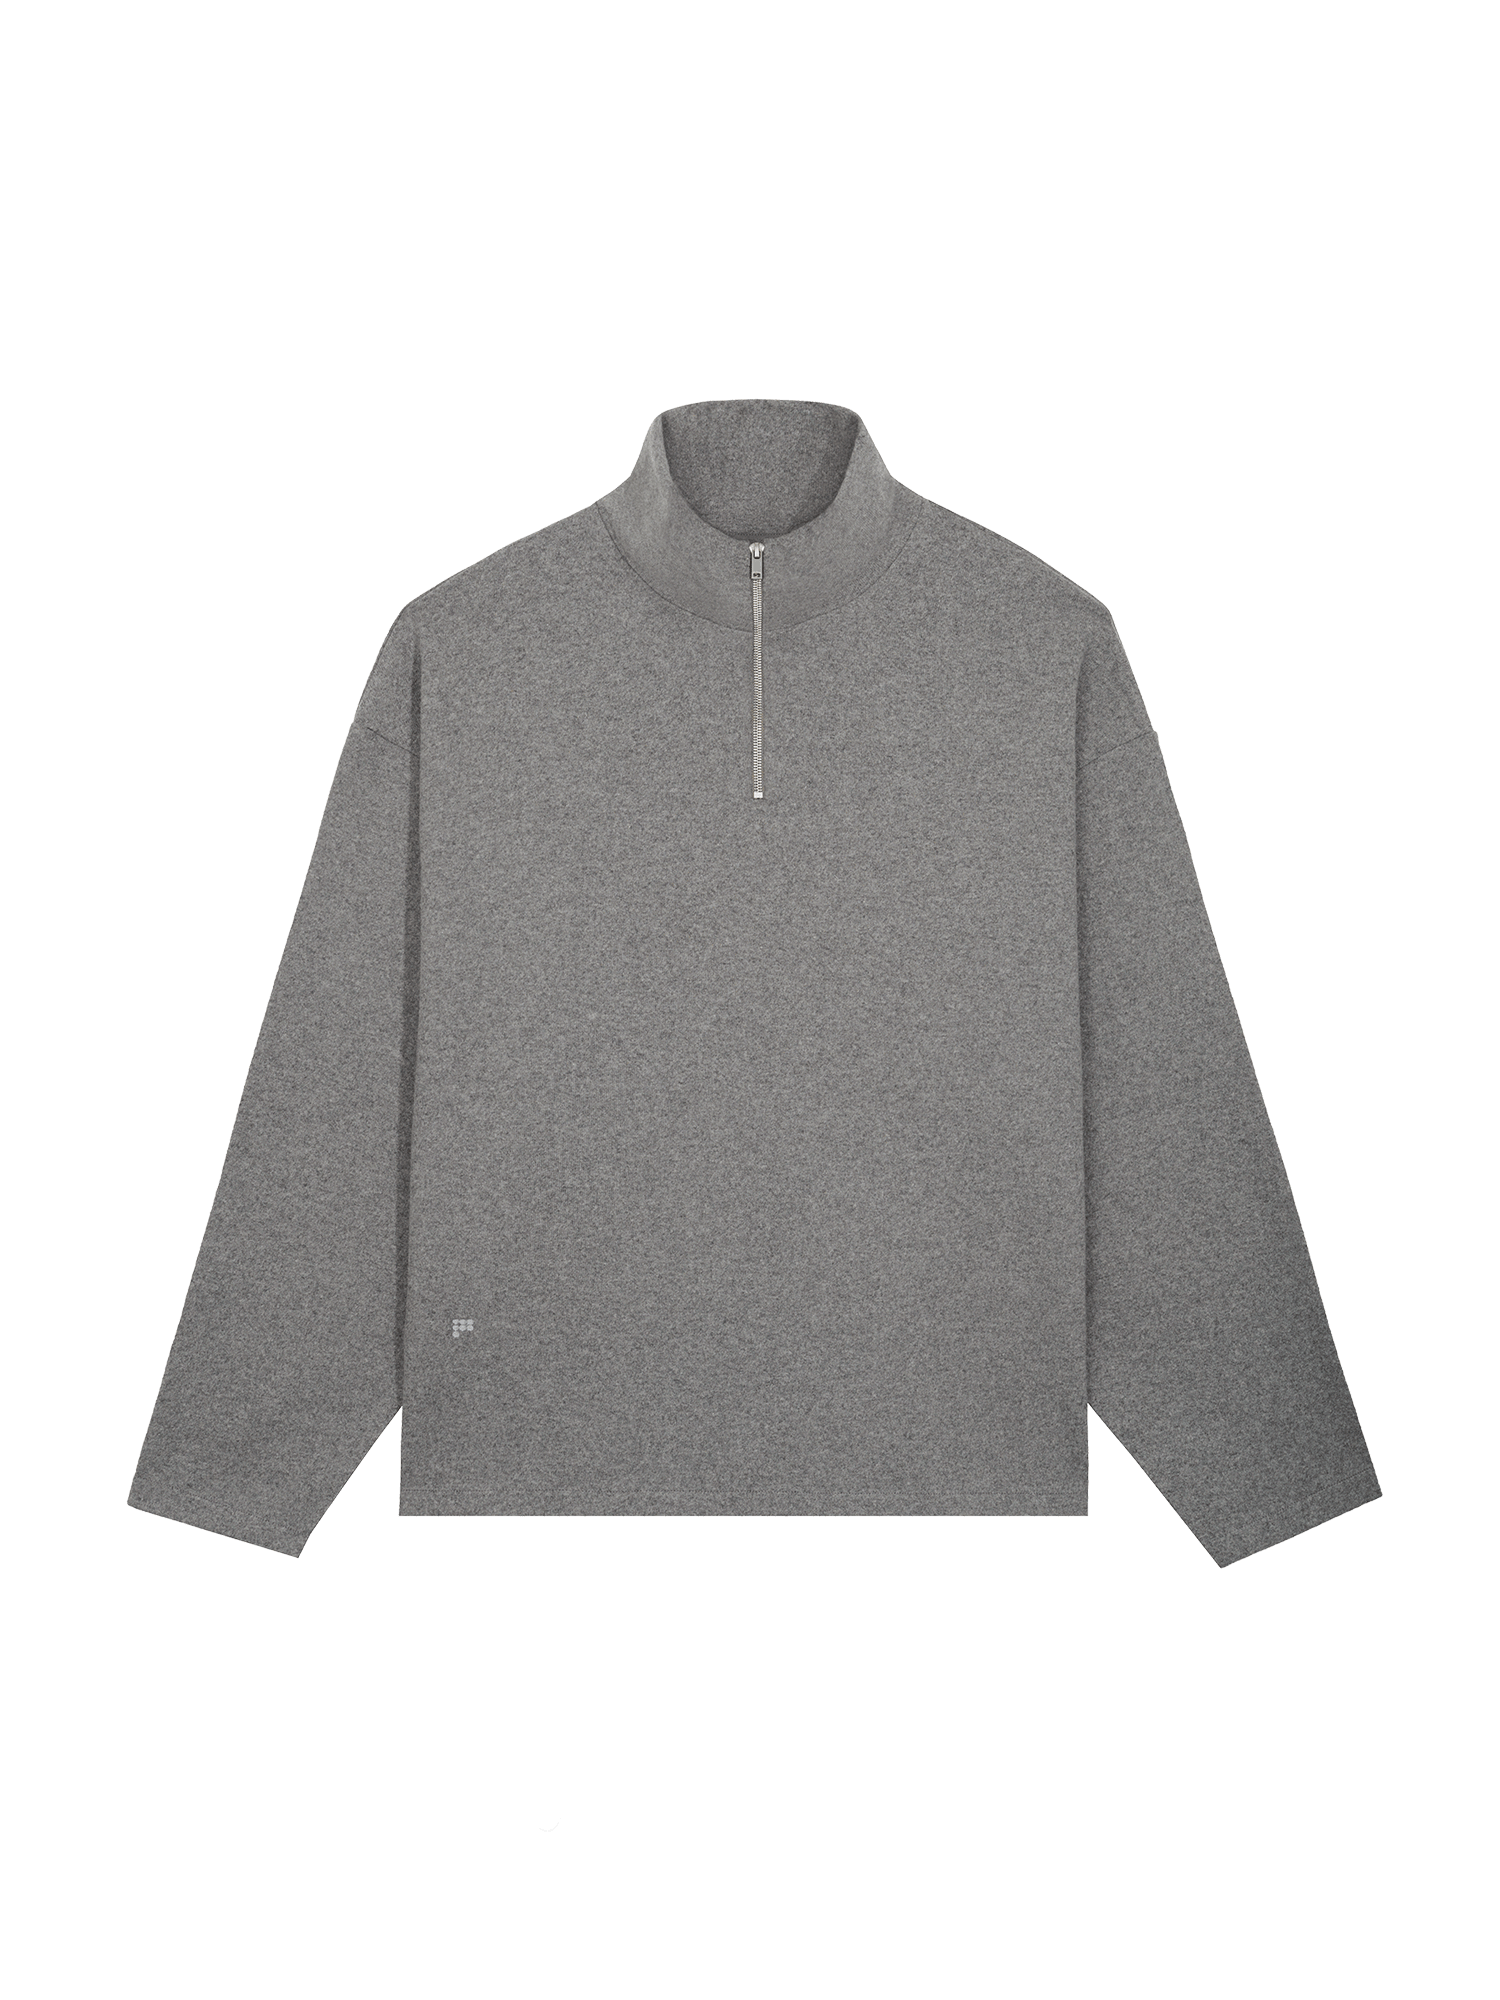 Mens-Wool-Jersey-Half-Zip-Sweatshirt-Volcanic-Grey-packshot-2